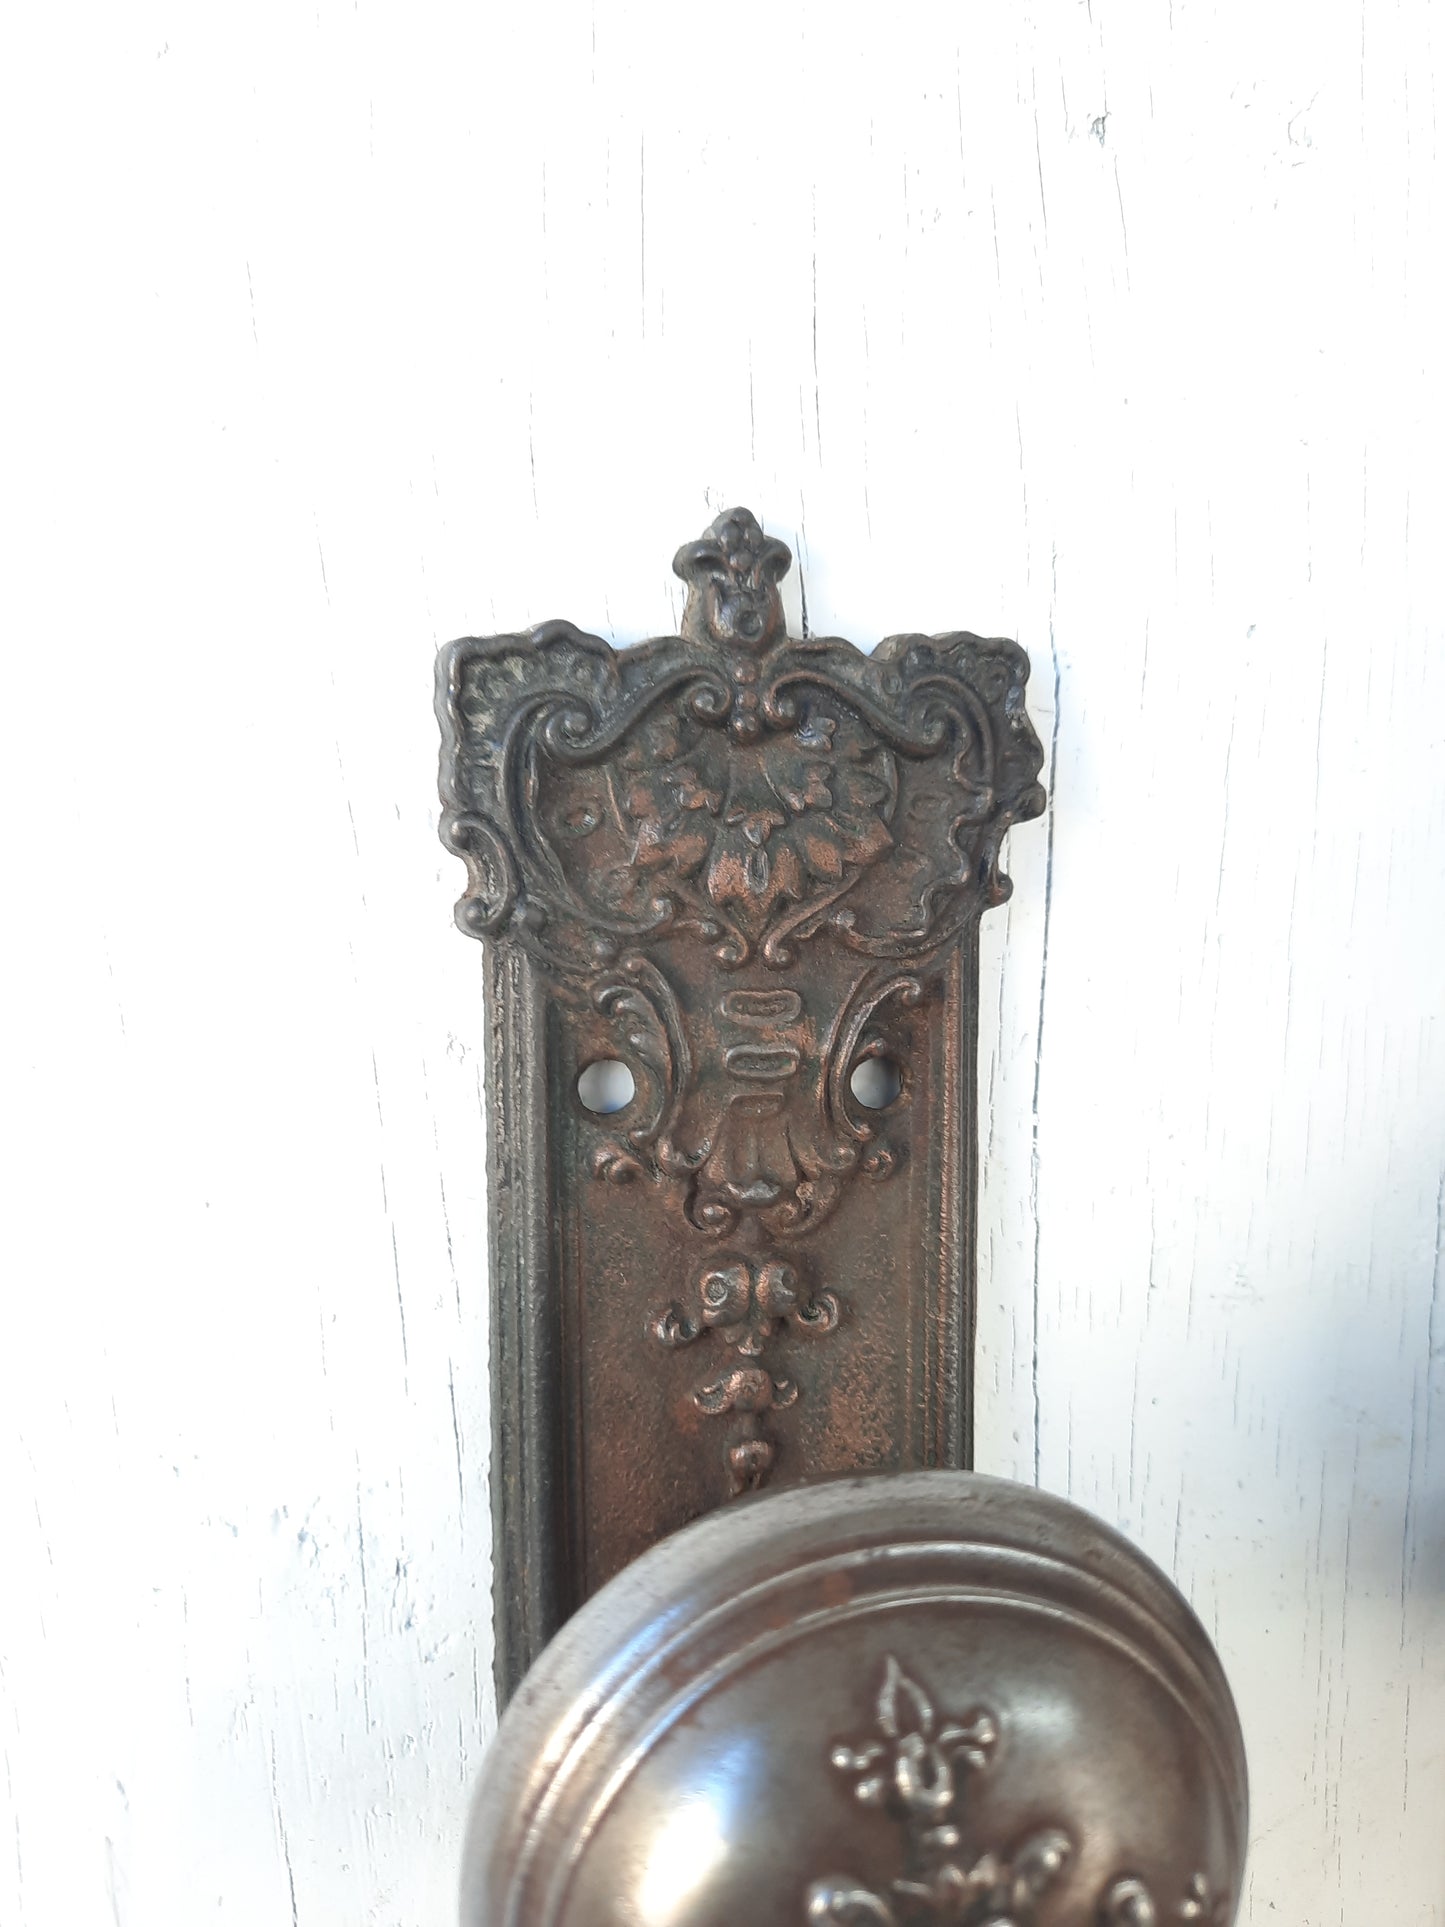 Complete Set Victorian Door Hardware, Antique Door Knobsm Ornate Hardware, Pair of Escutcheons 010208